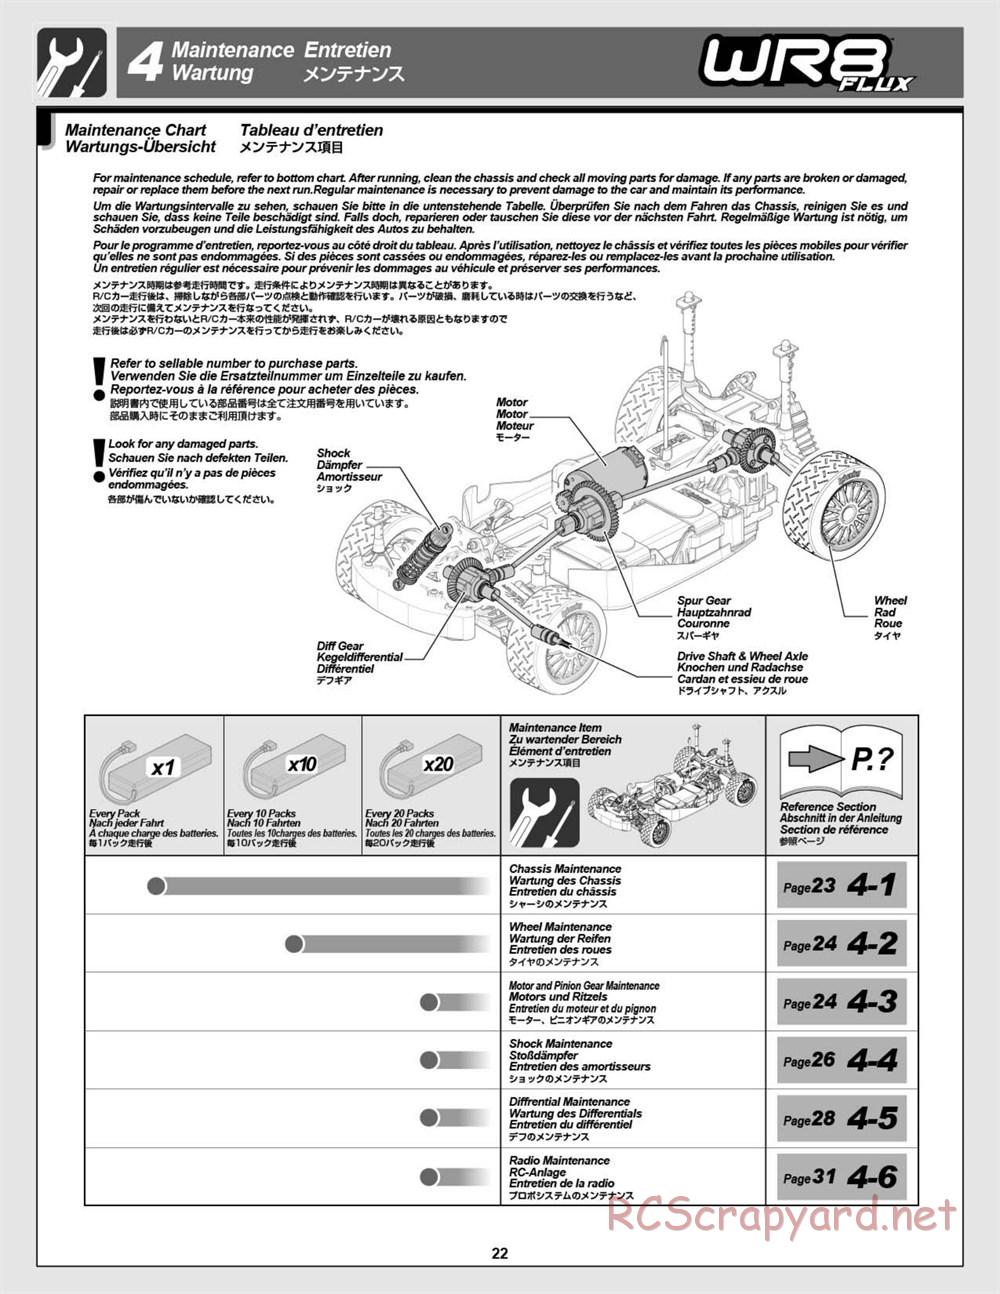 HPI - WR8 Flux - Manual - Page 22